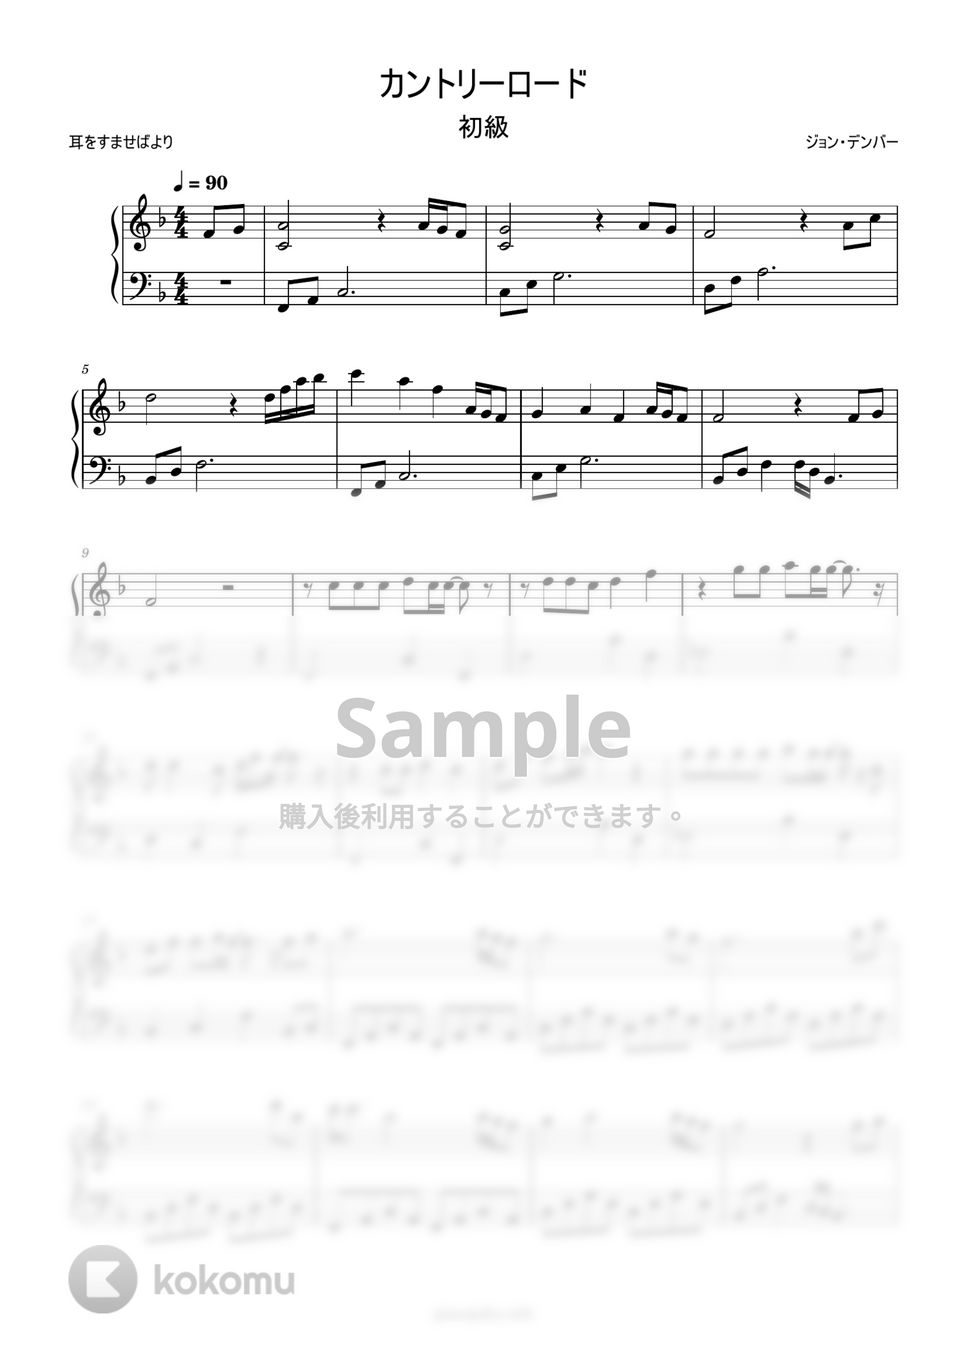 カントリーロード (へ長調簡単楽譜) by ピアノ塾